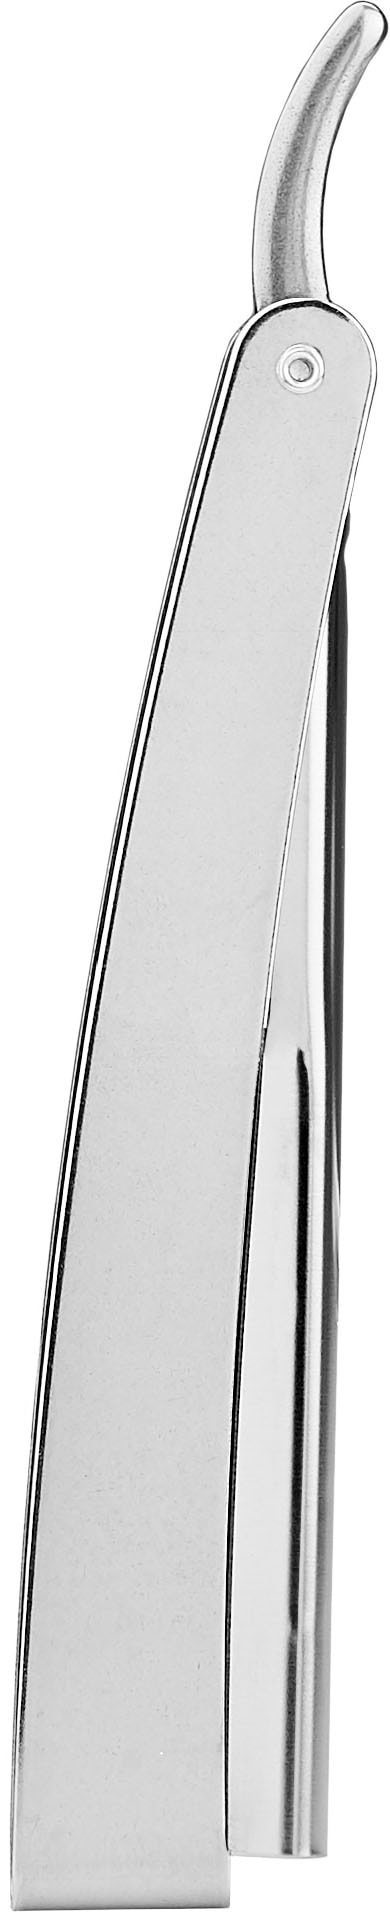 Klappgriff Rasiermesser 1955 | praktischem Rasiermesser »silberfarben«, BAUR FRIPAC mit